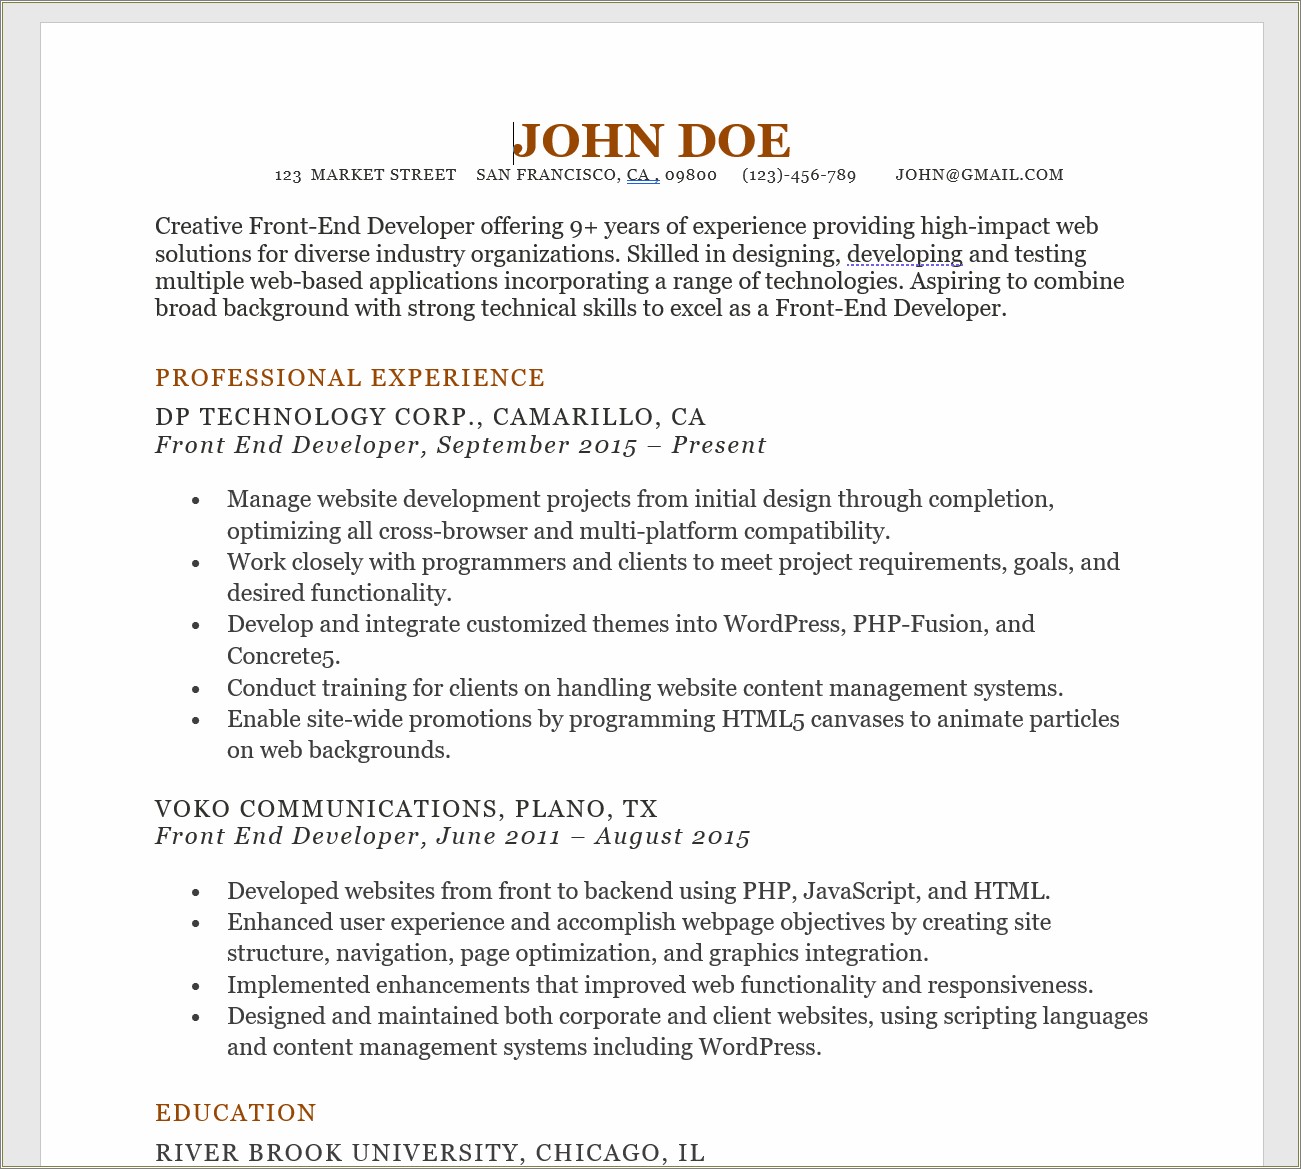 Educational High School Resume Jane Doe